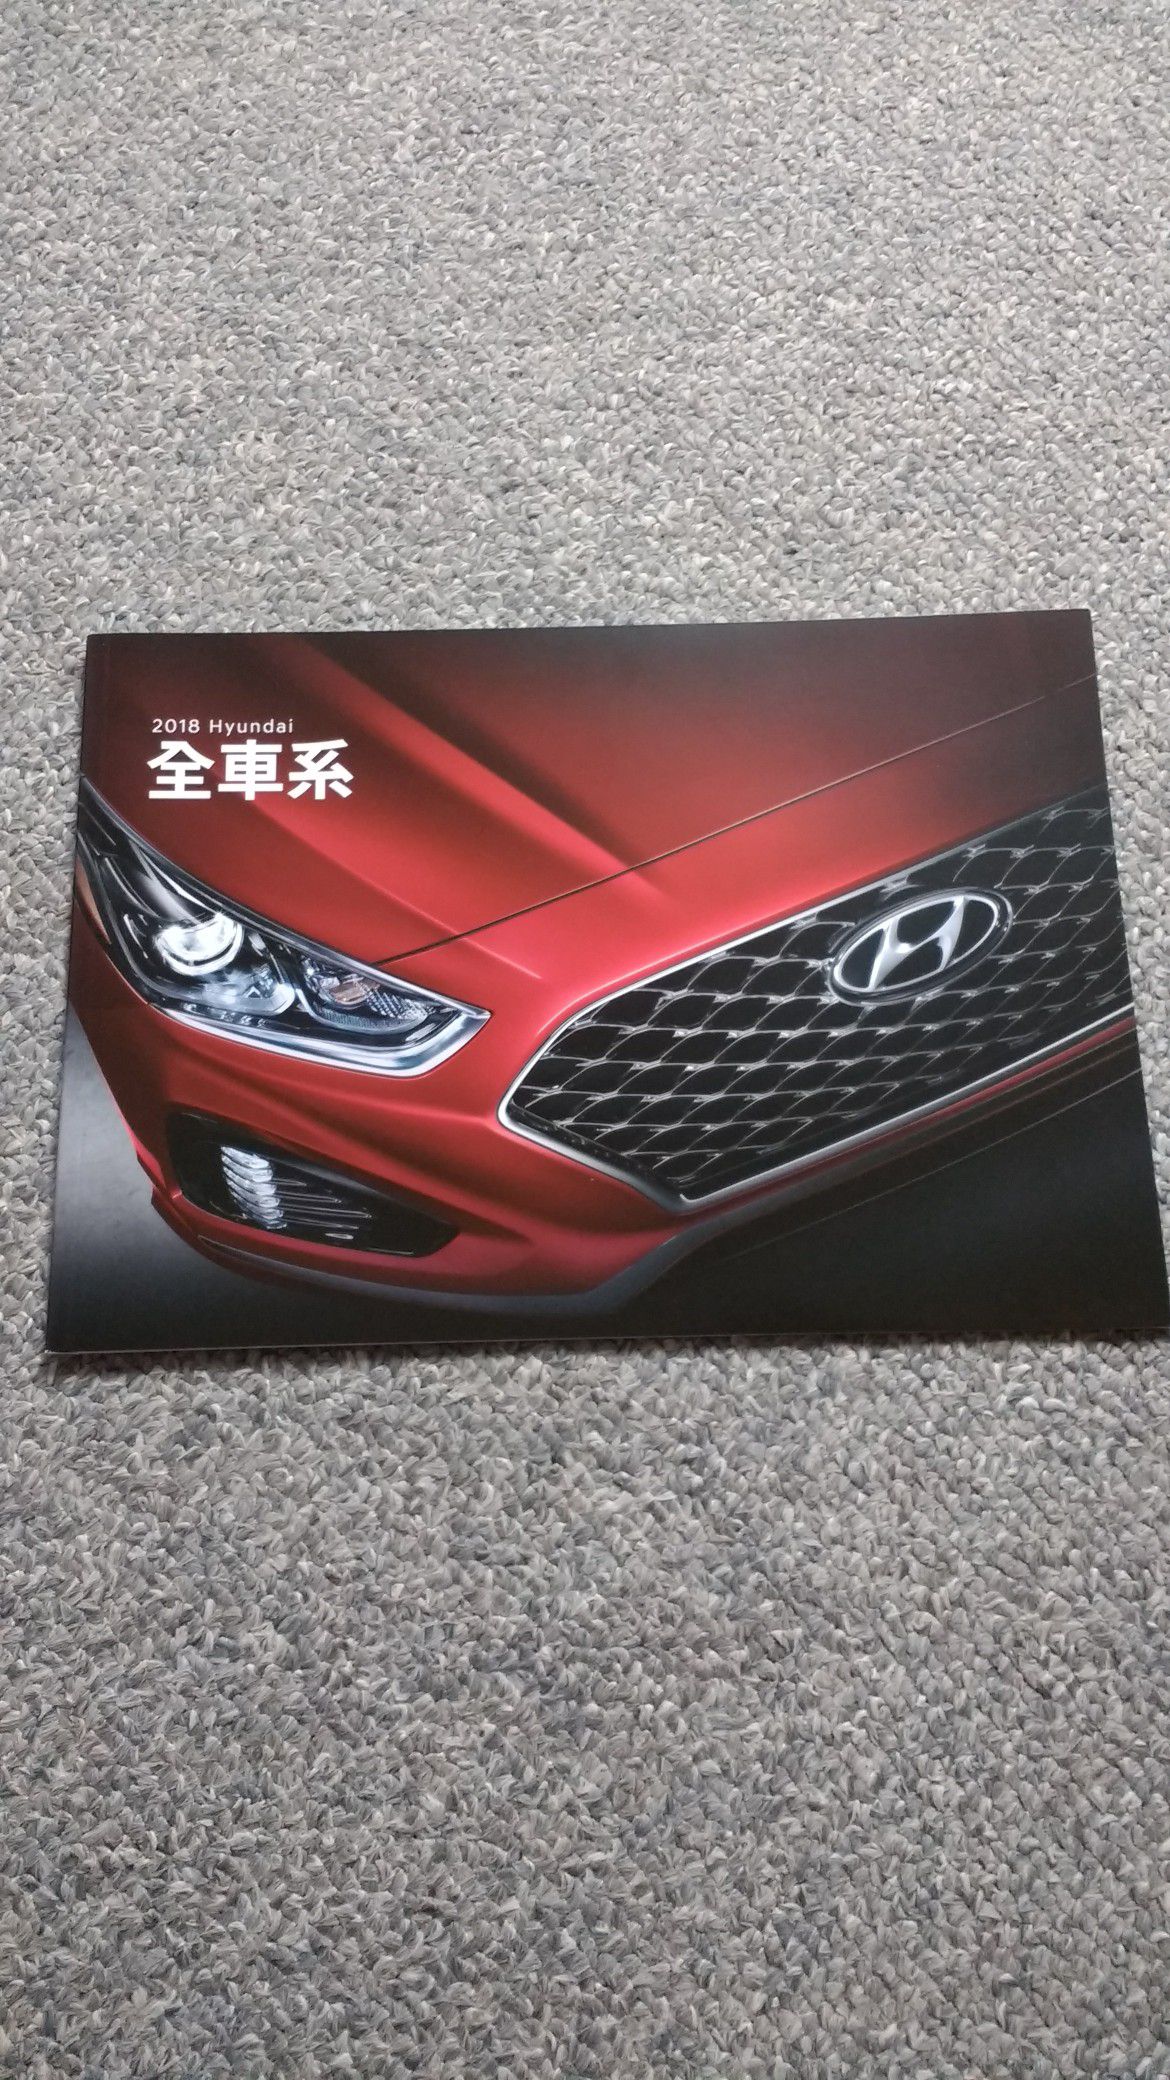 2018 Hyundai Brochure Full Line Mandarin